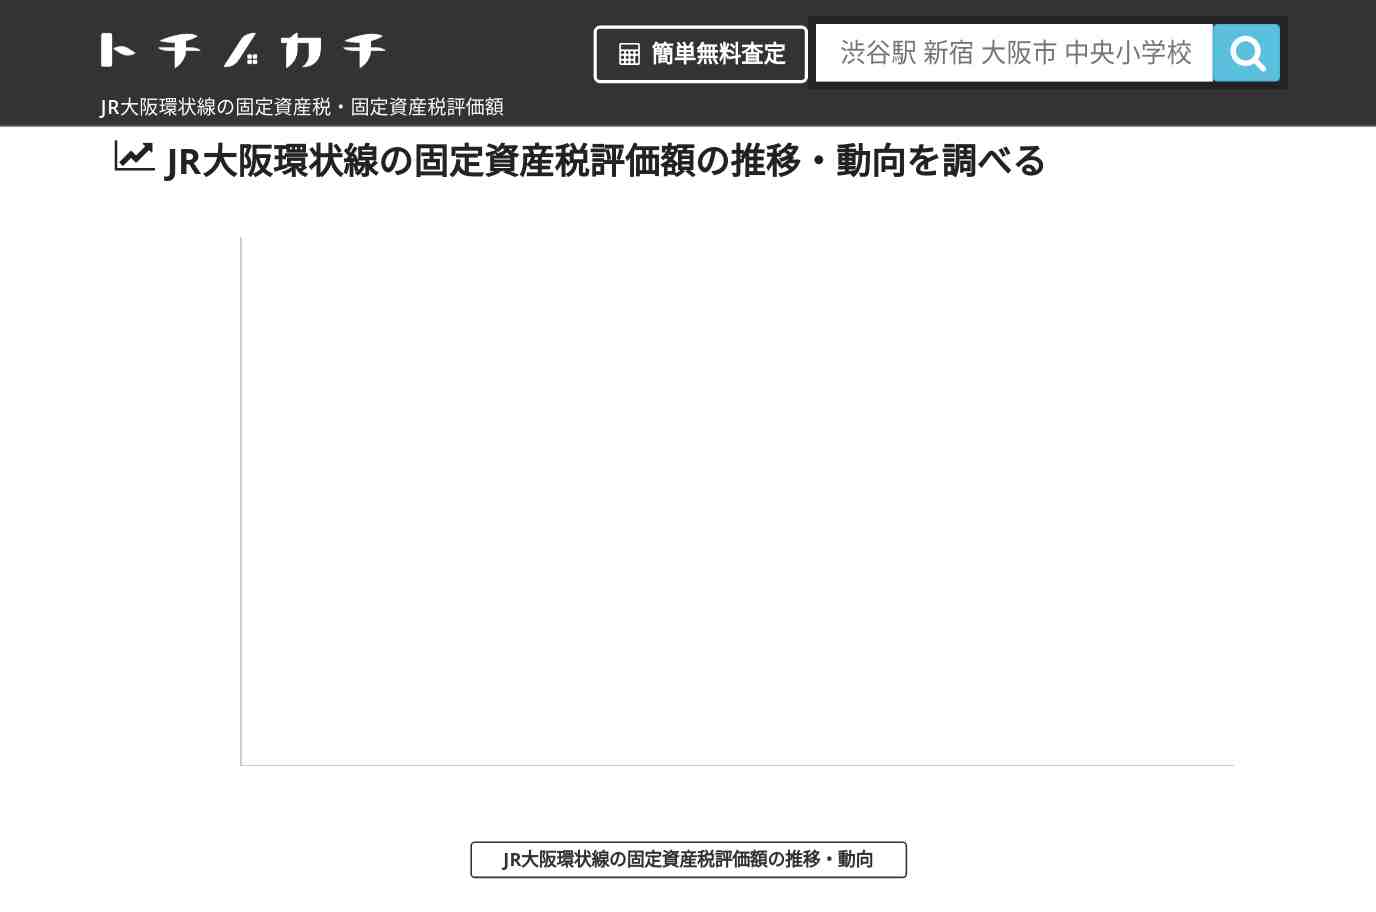 JR大阪環状線(JR)の固定資産税・固定資産税評価額 | トチノカチ